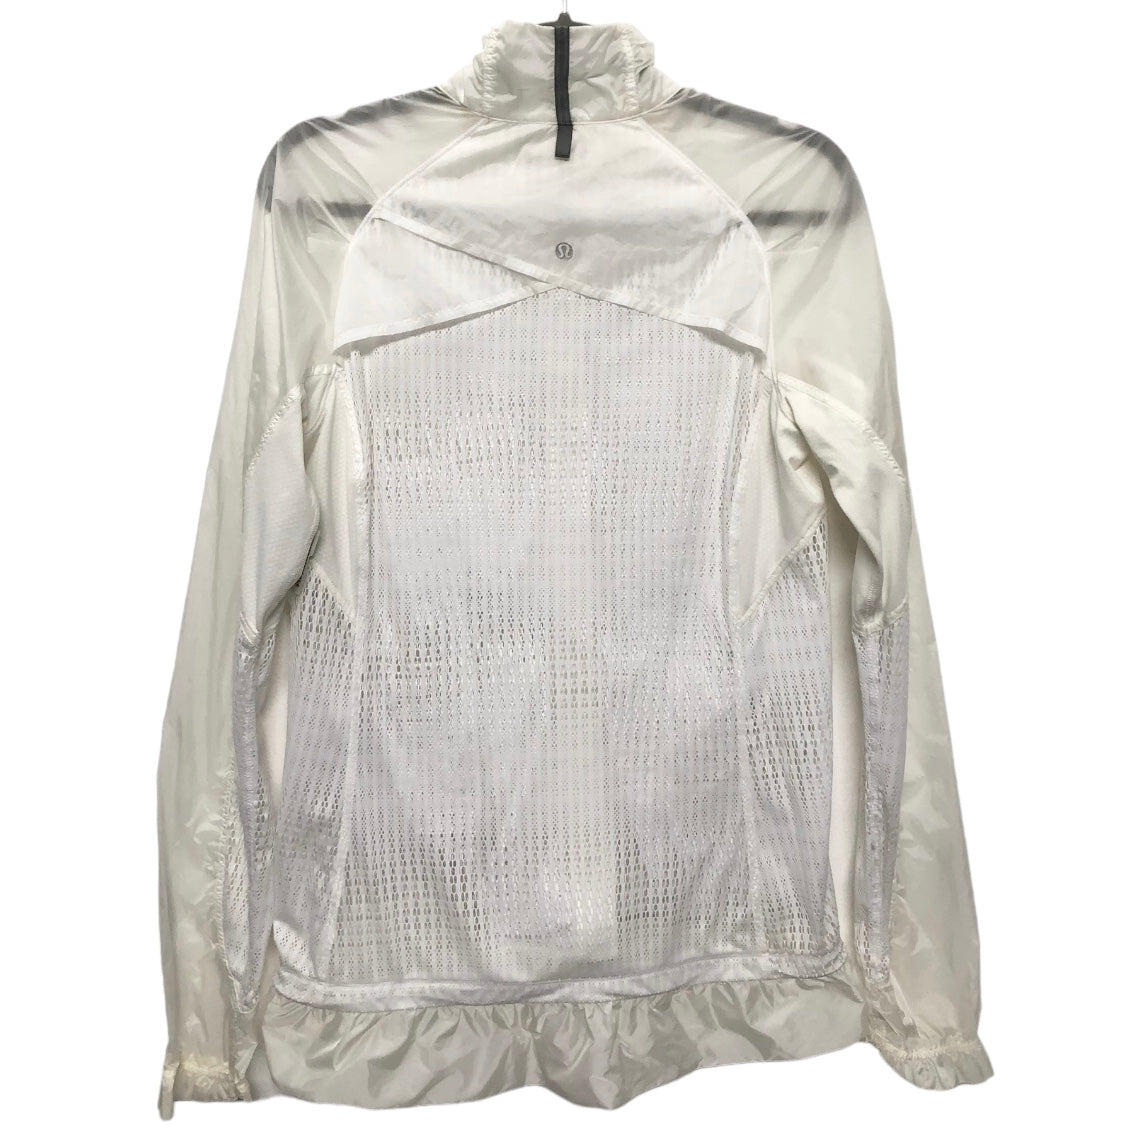 Athletic Jacket By Lululemon  Size: 8